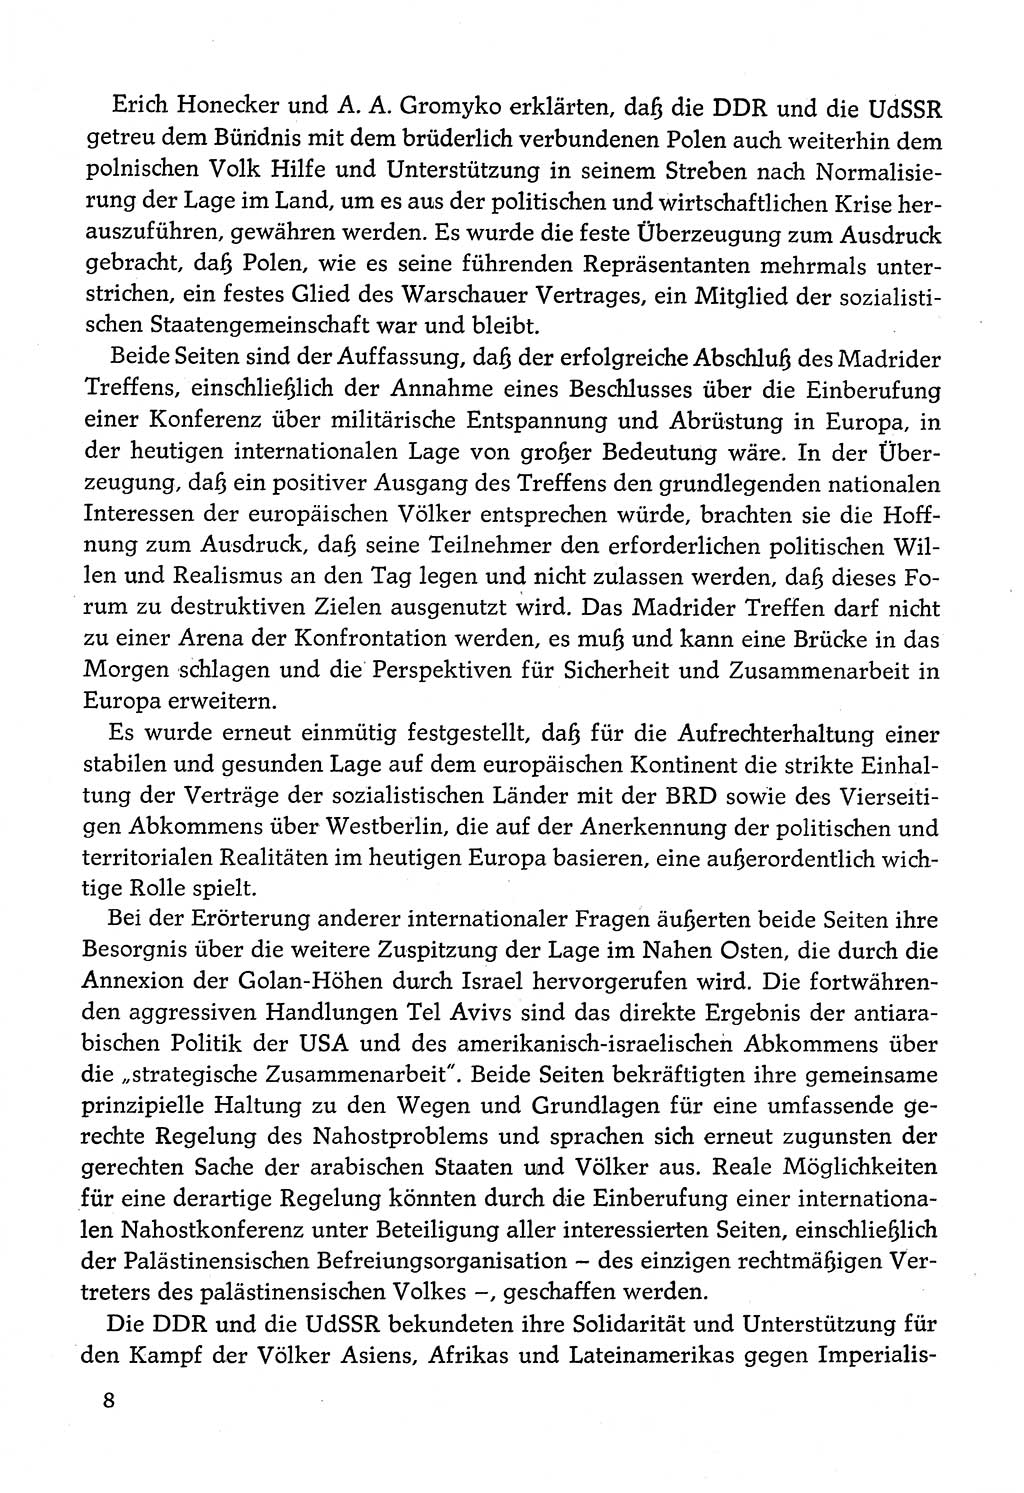 Dokumente der Sozialistischen Einheitspartei Deutschlands (SED) [Deutsche Demokratische Republik (DDR)] 1982-1983, Seite 8 (Dok. SED DDR 1982-1983, S. 8)